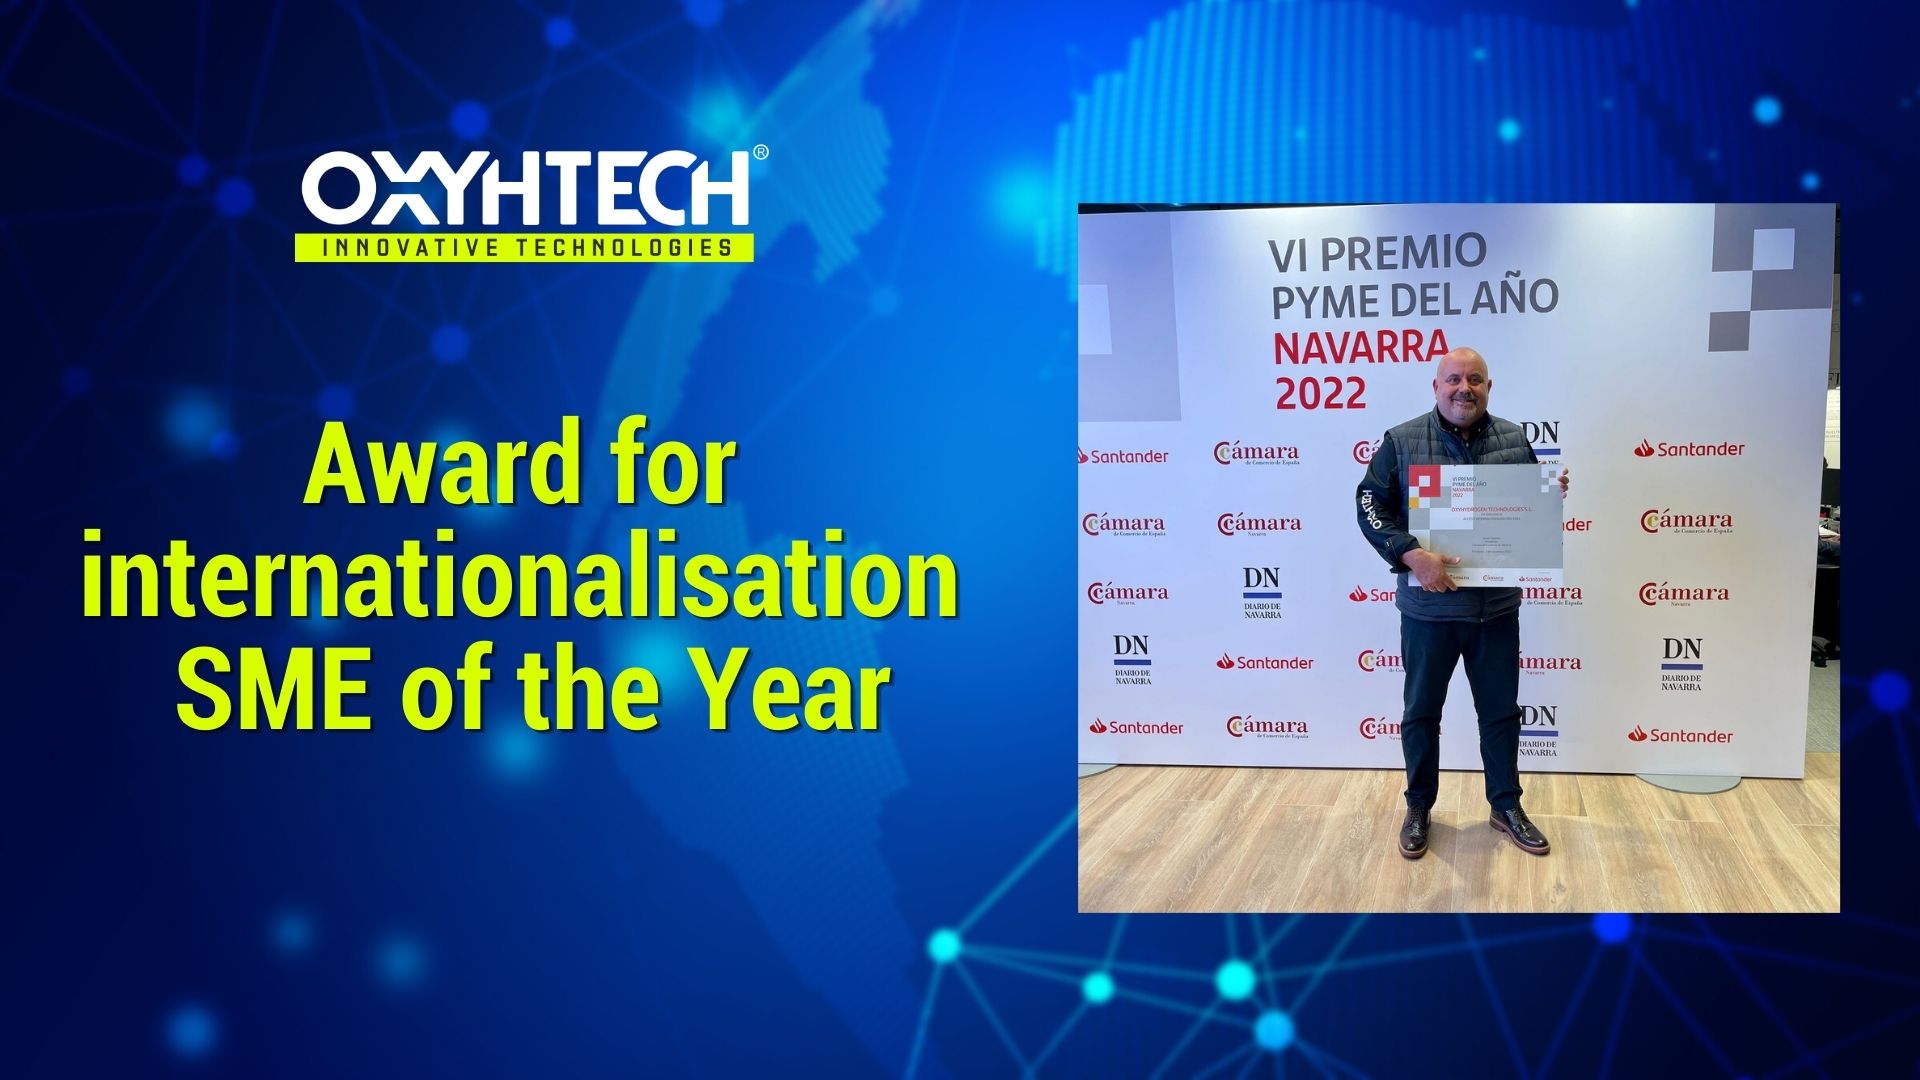 internationalisation award oxyhtech